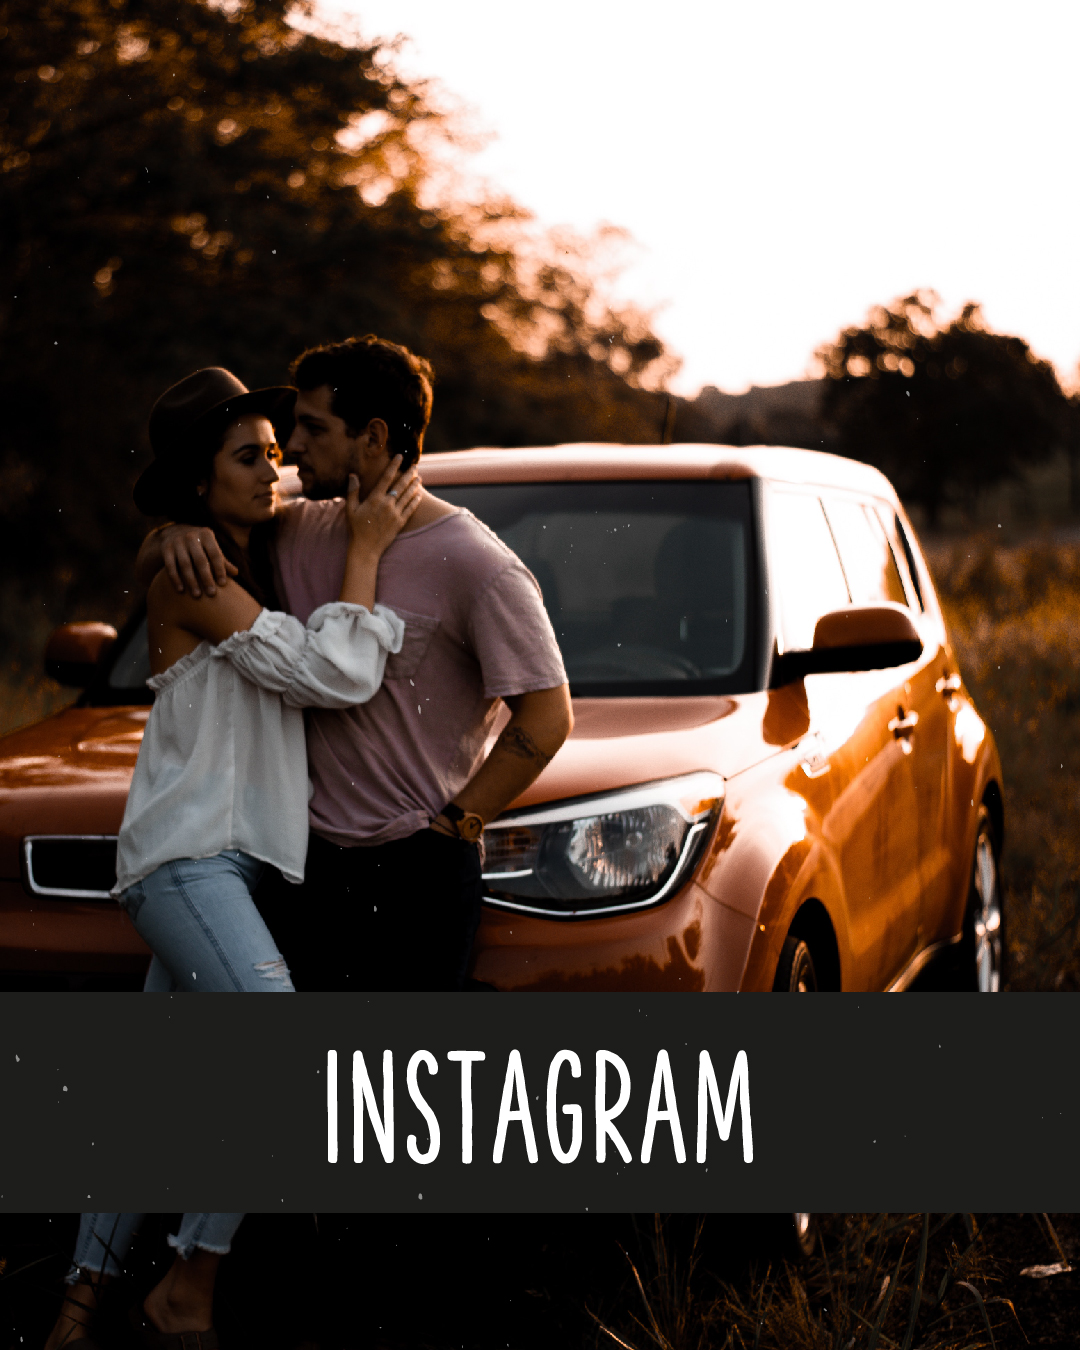 ein Paar steht vor einem Auto im Sonnenuntergang, darunter in Großbuchstaben: Instagram